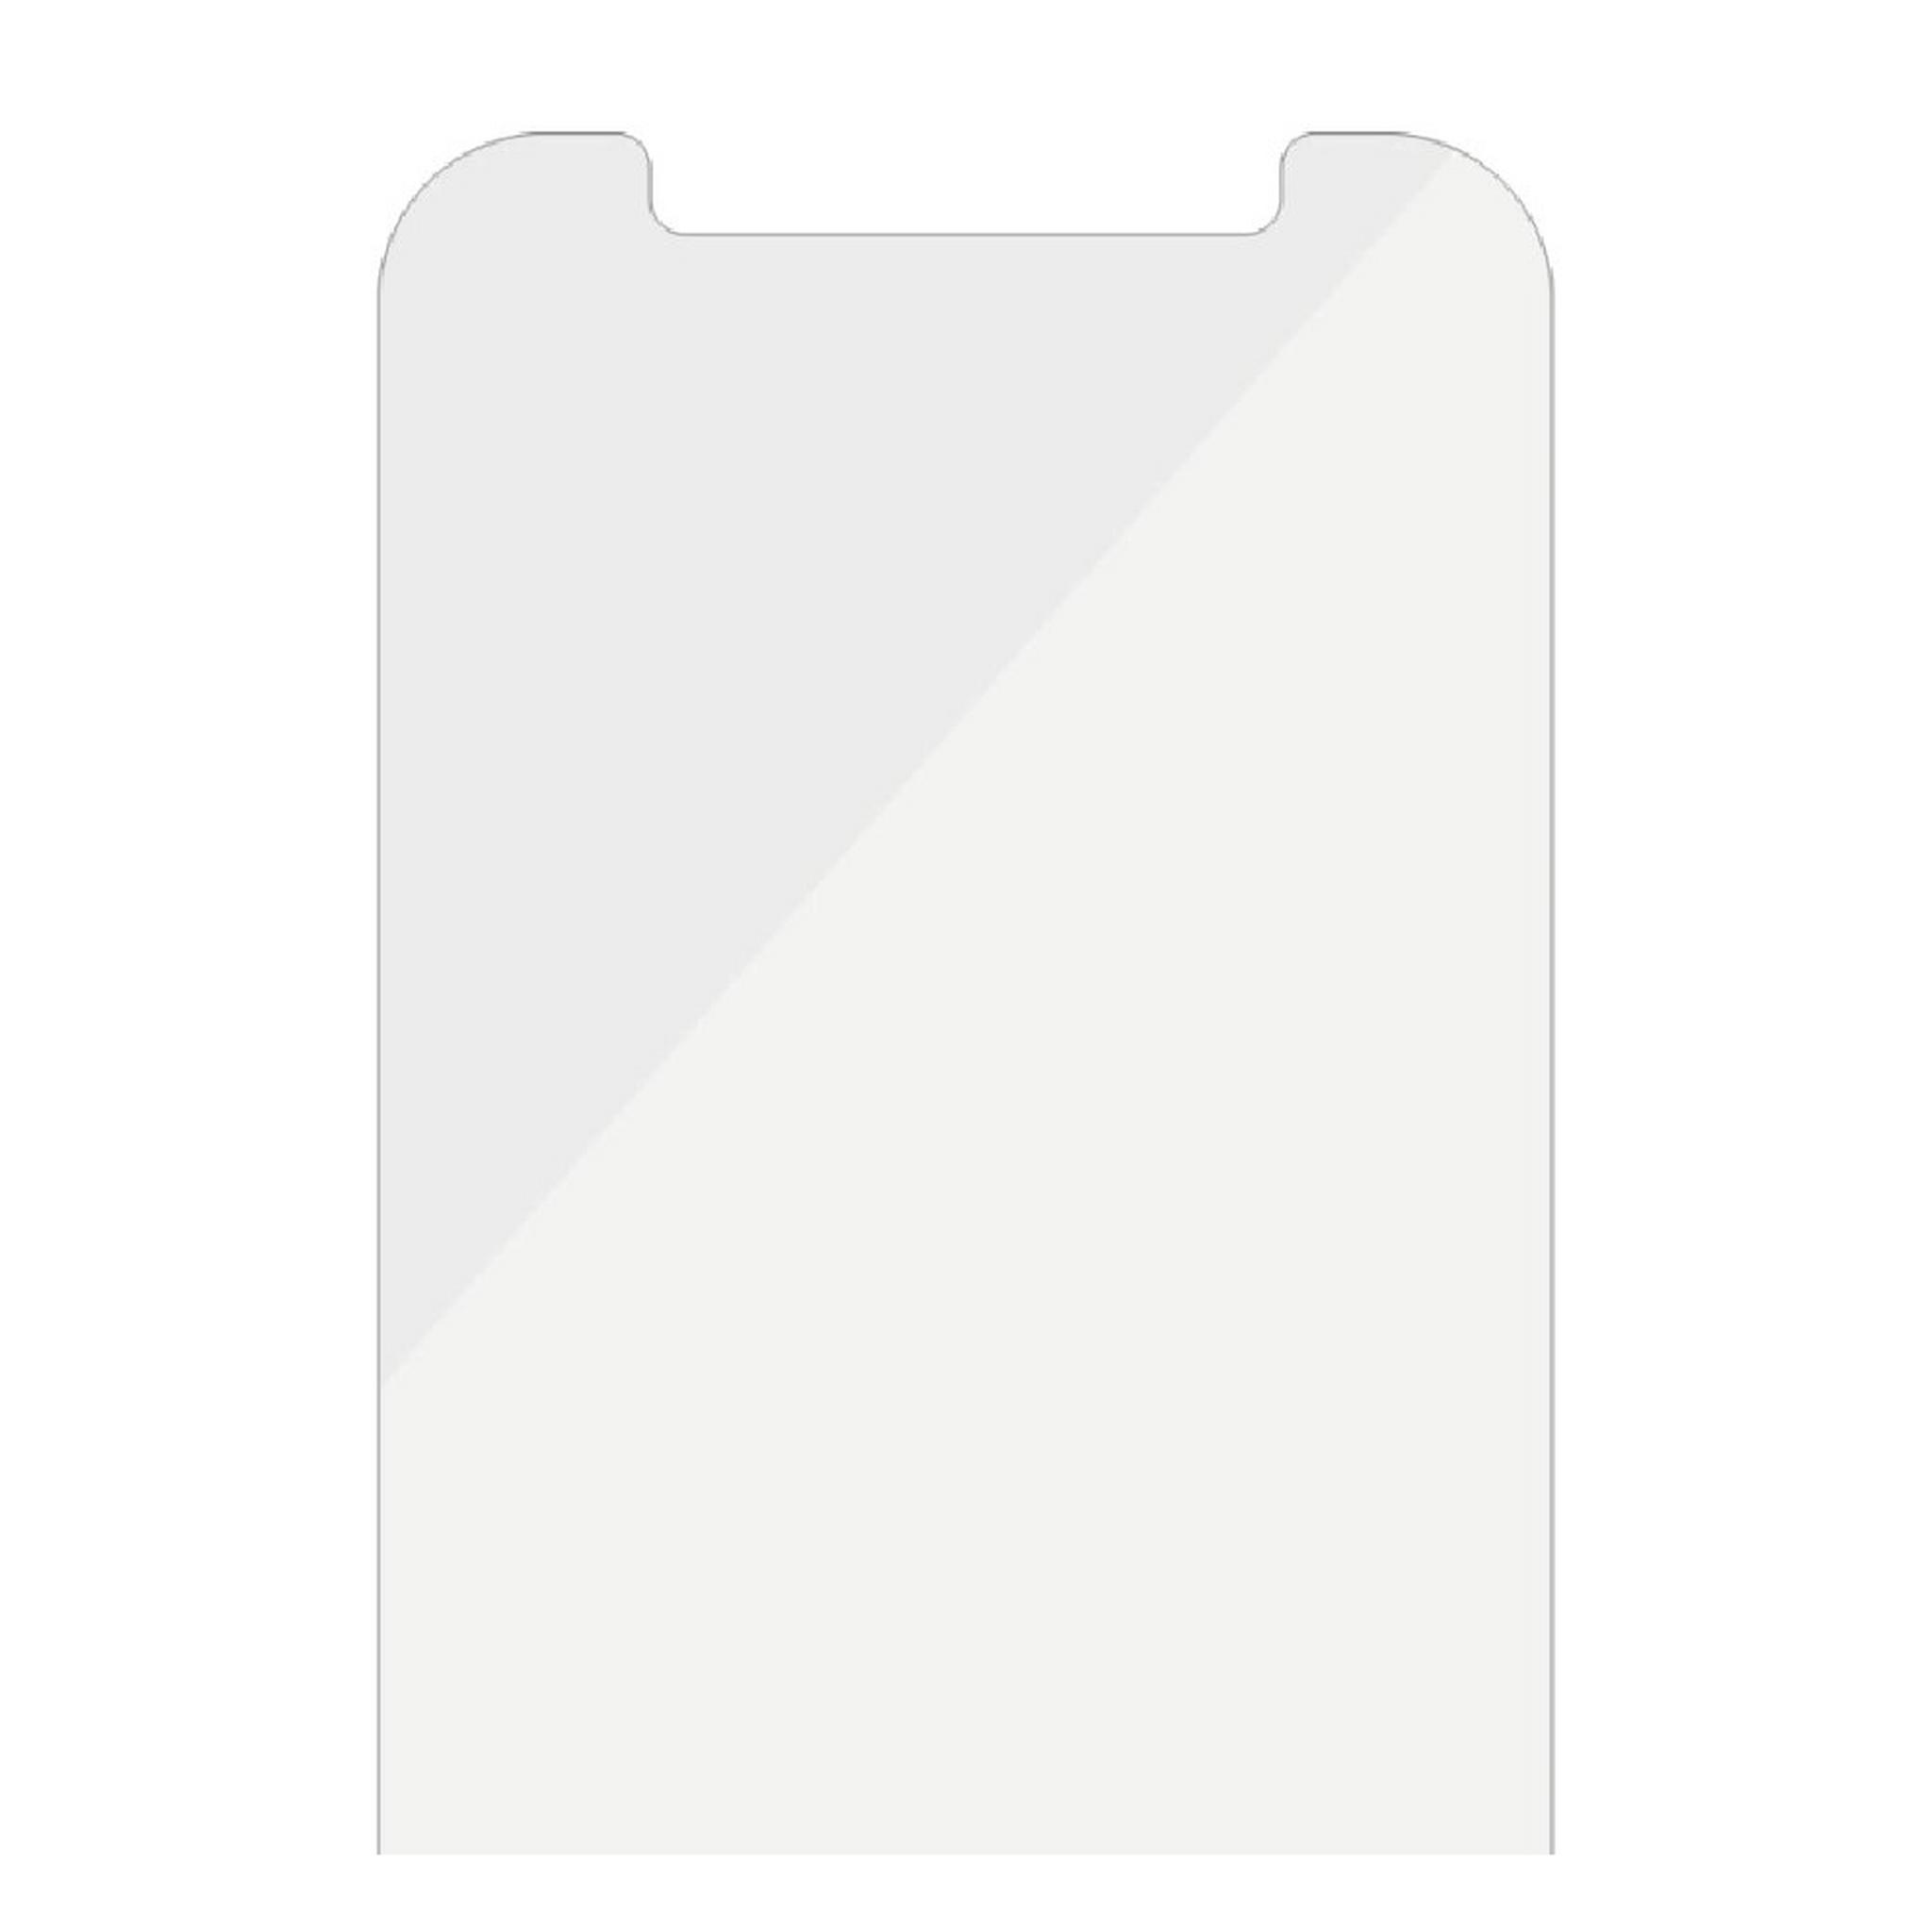 واقي الشاشة الزجاجي لآيفون 12 برو من بانزر جلاز (2708) - شفاف